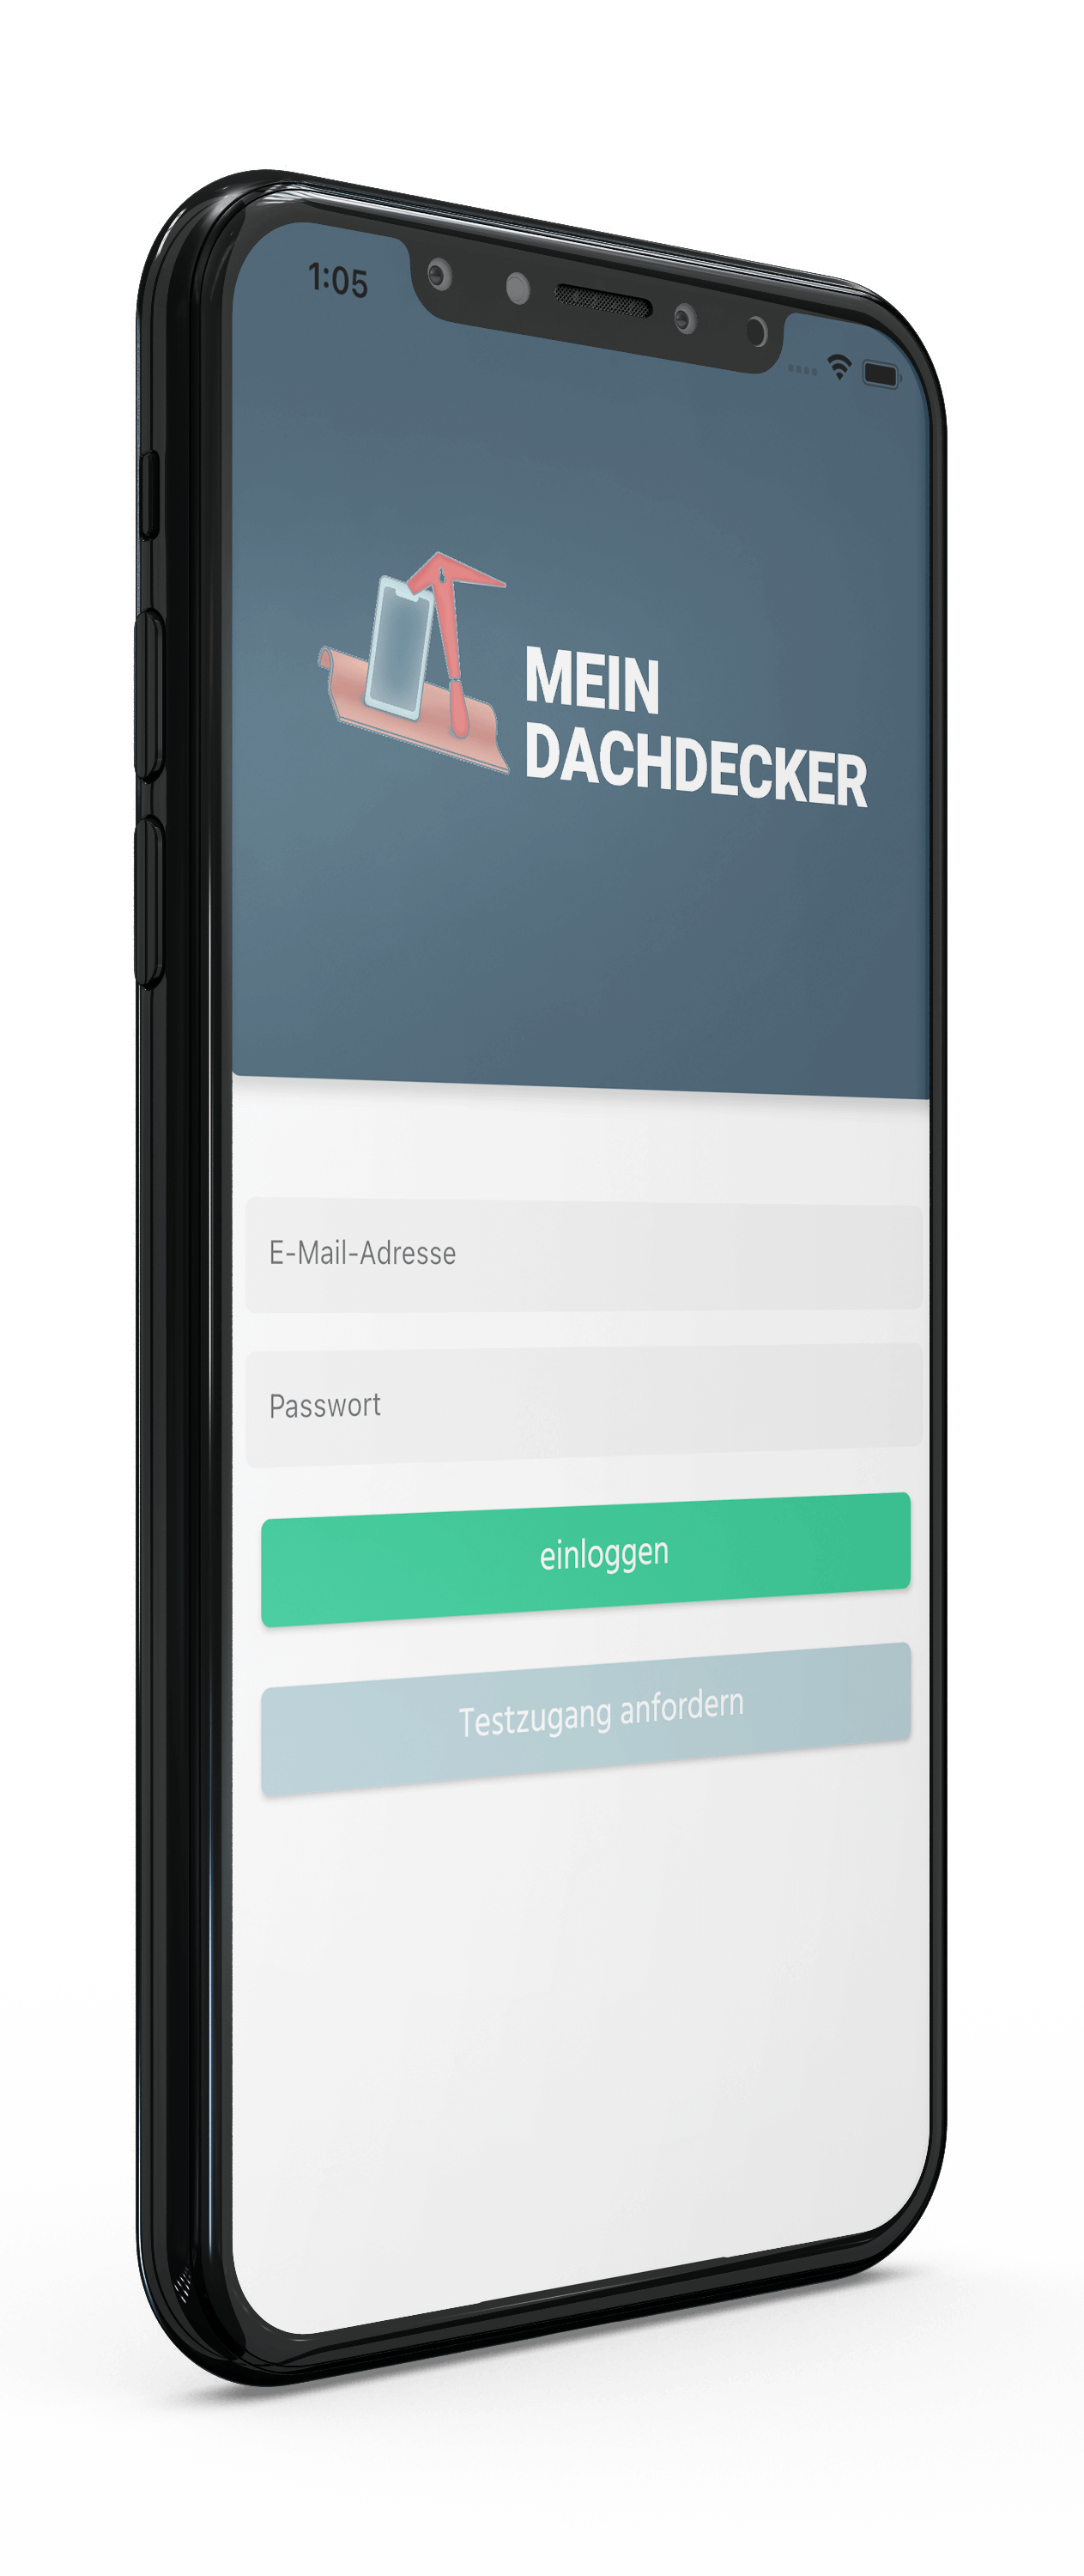 MeinDachecker-App, Handwerks-App mit Bautagebuch